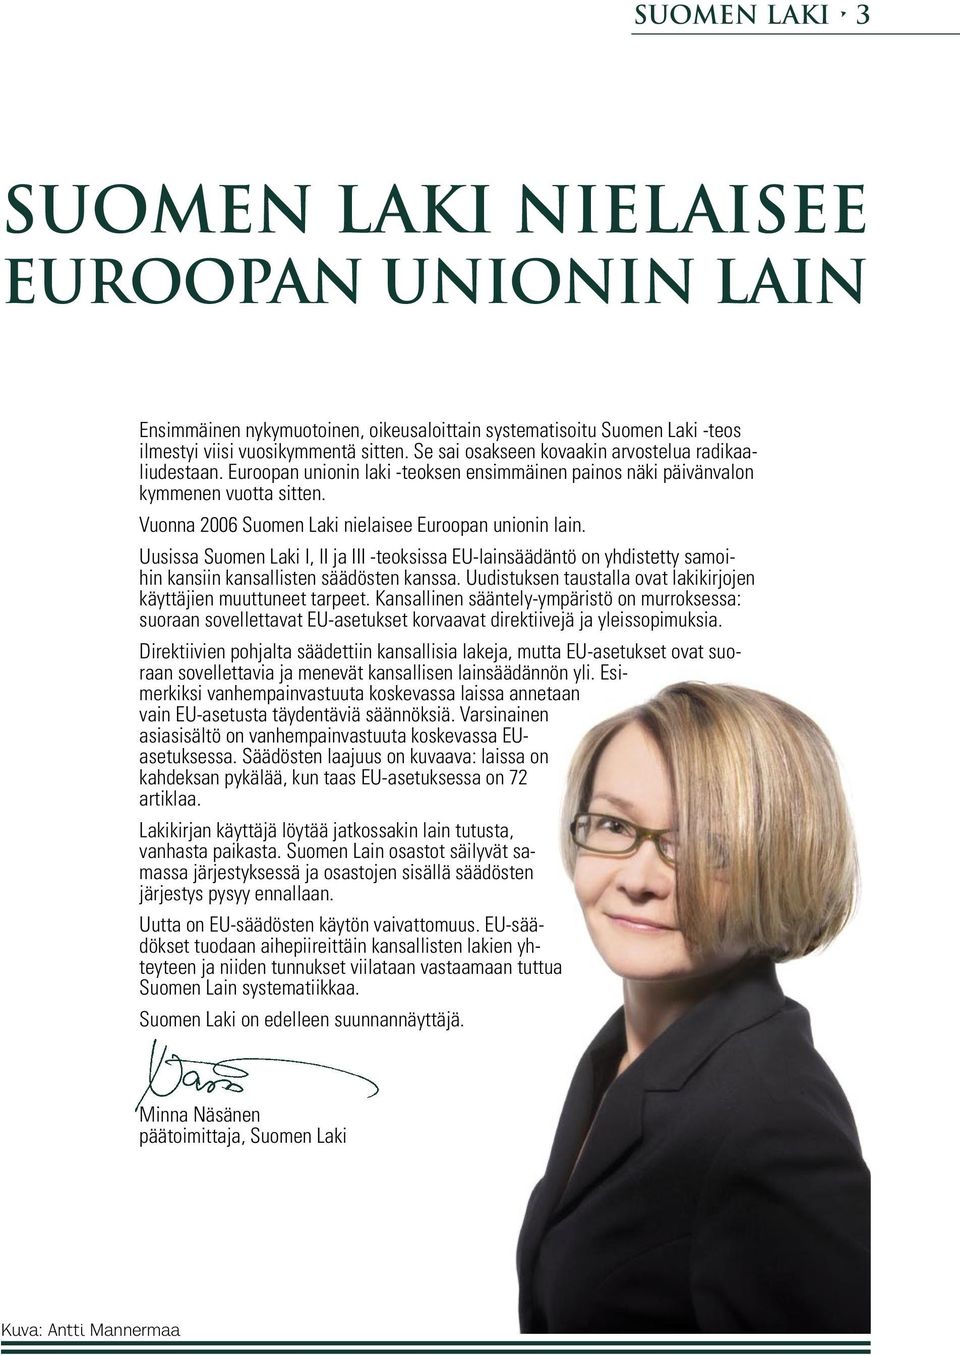 Vuonna 2006 Suomen Laki nielaisee Euroopan unionin lain. Uusissa Suomen Laki I, II ja III -teoksissa EU-lainsäädäntö on yhdistetty samoihin kansiin kansallisten säädösten kanssa.